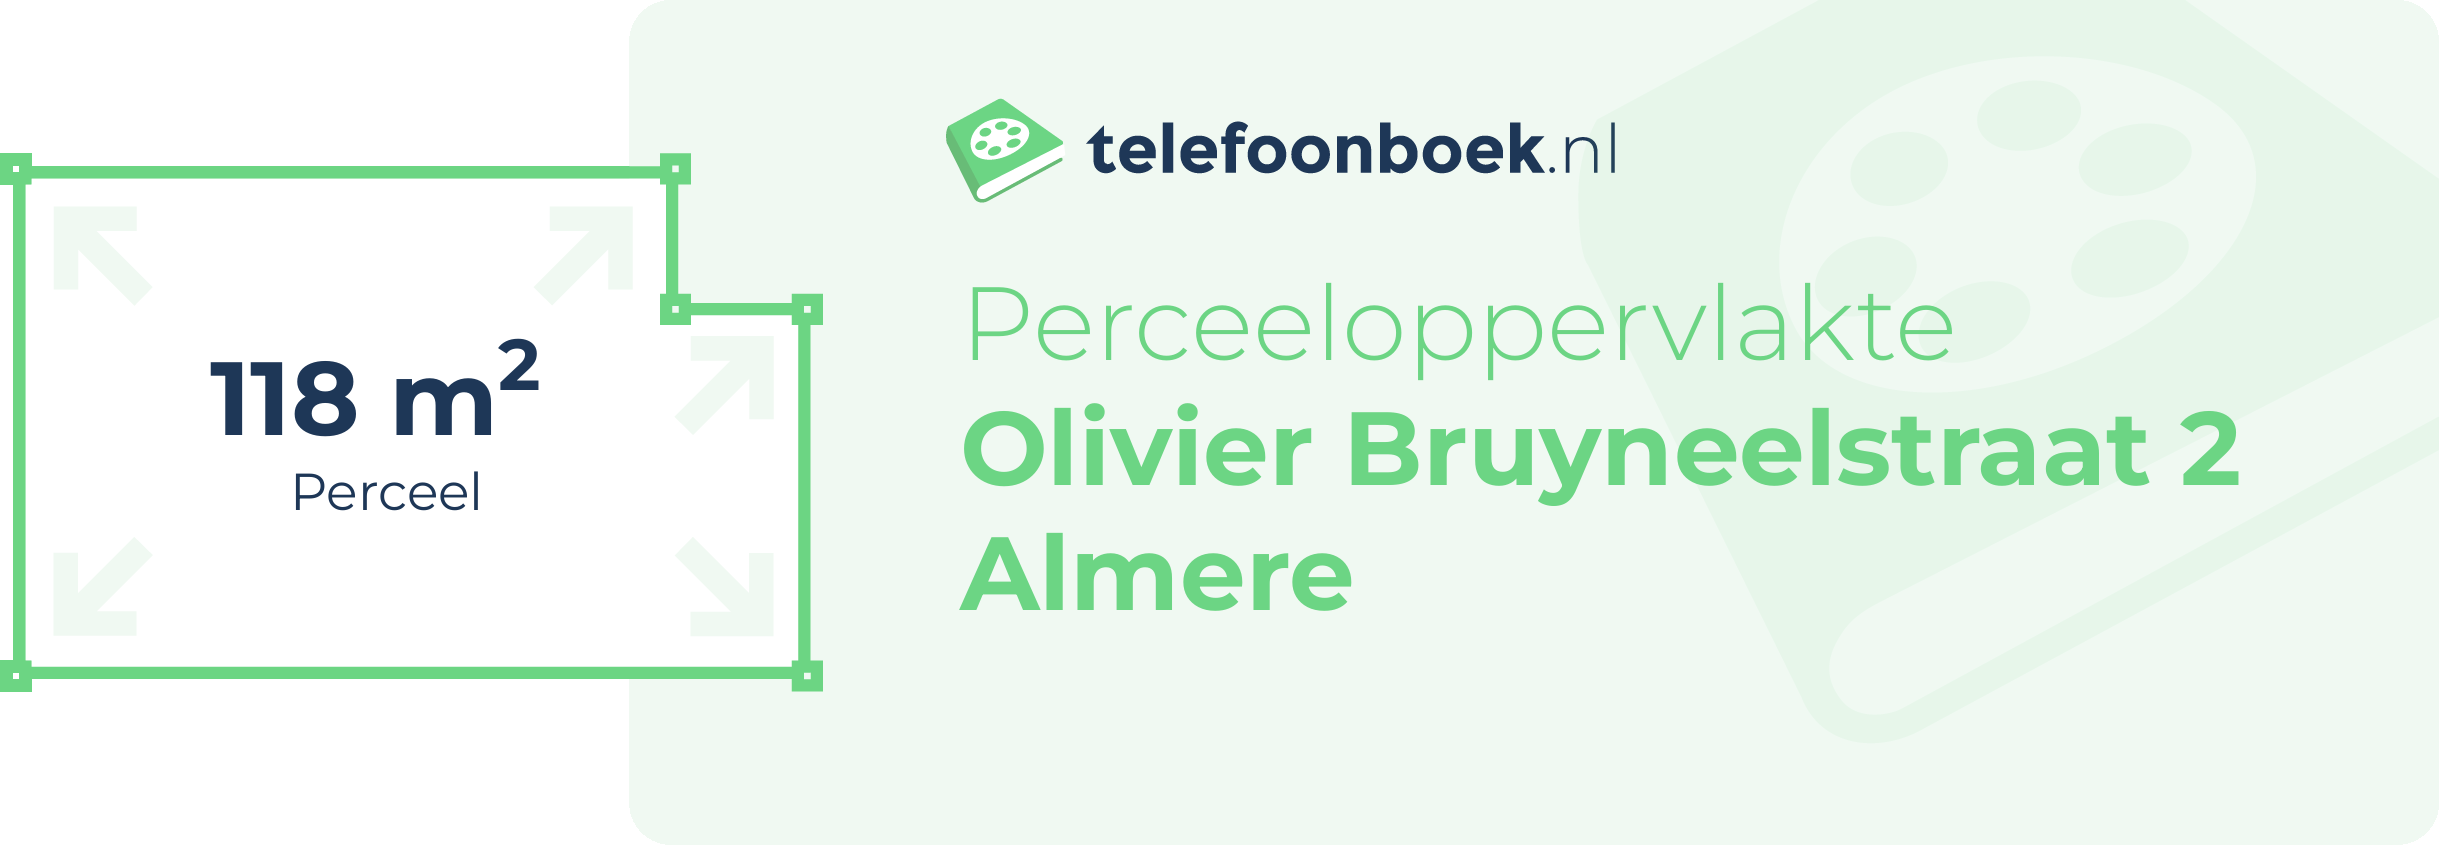 Perceeloppervlakte Olivier Bruyneelstraat 2 Almere